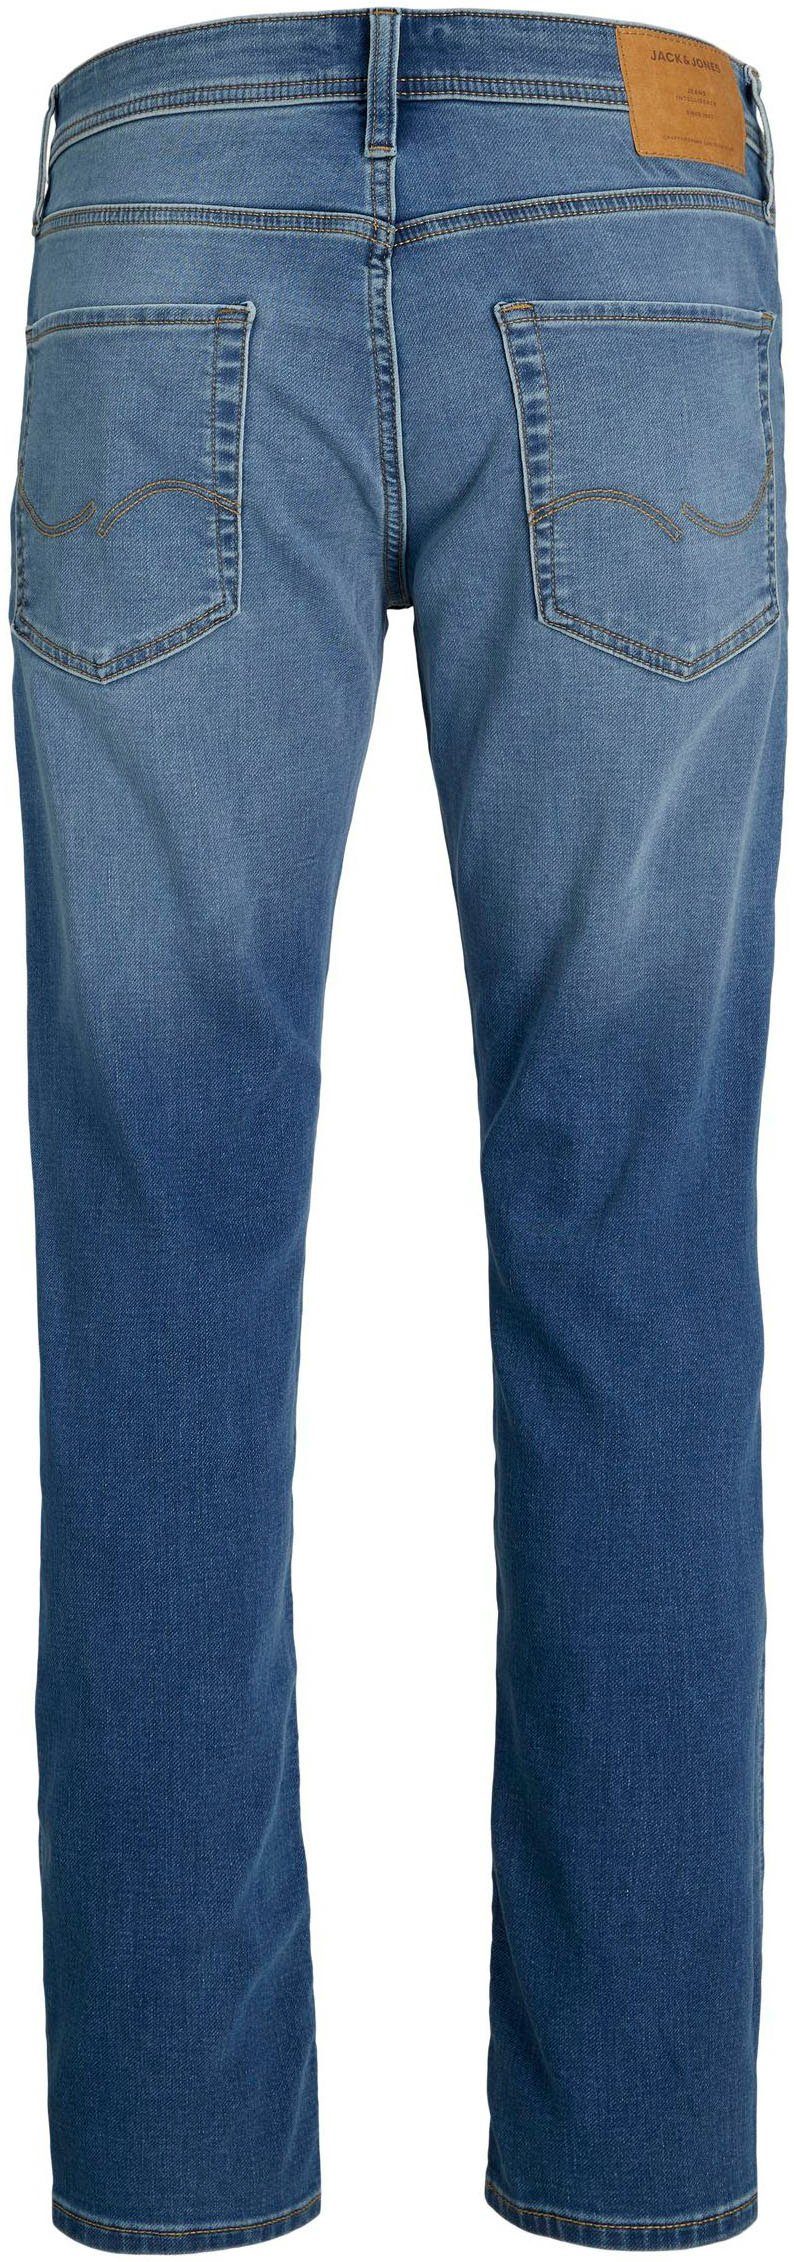 506 & denim JJORIGINAL Jack JJIMIKE blue Tapered-fit-Jeans I.K MF Jones